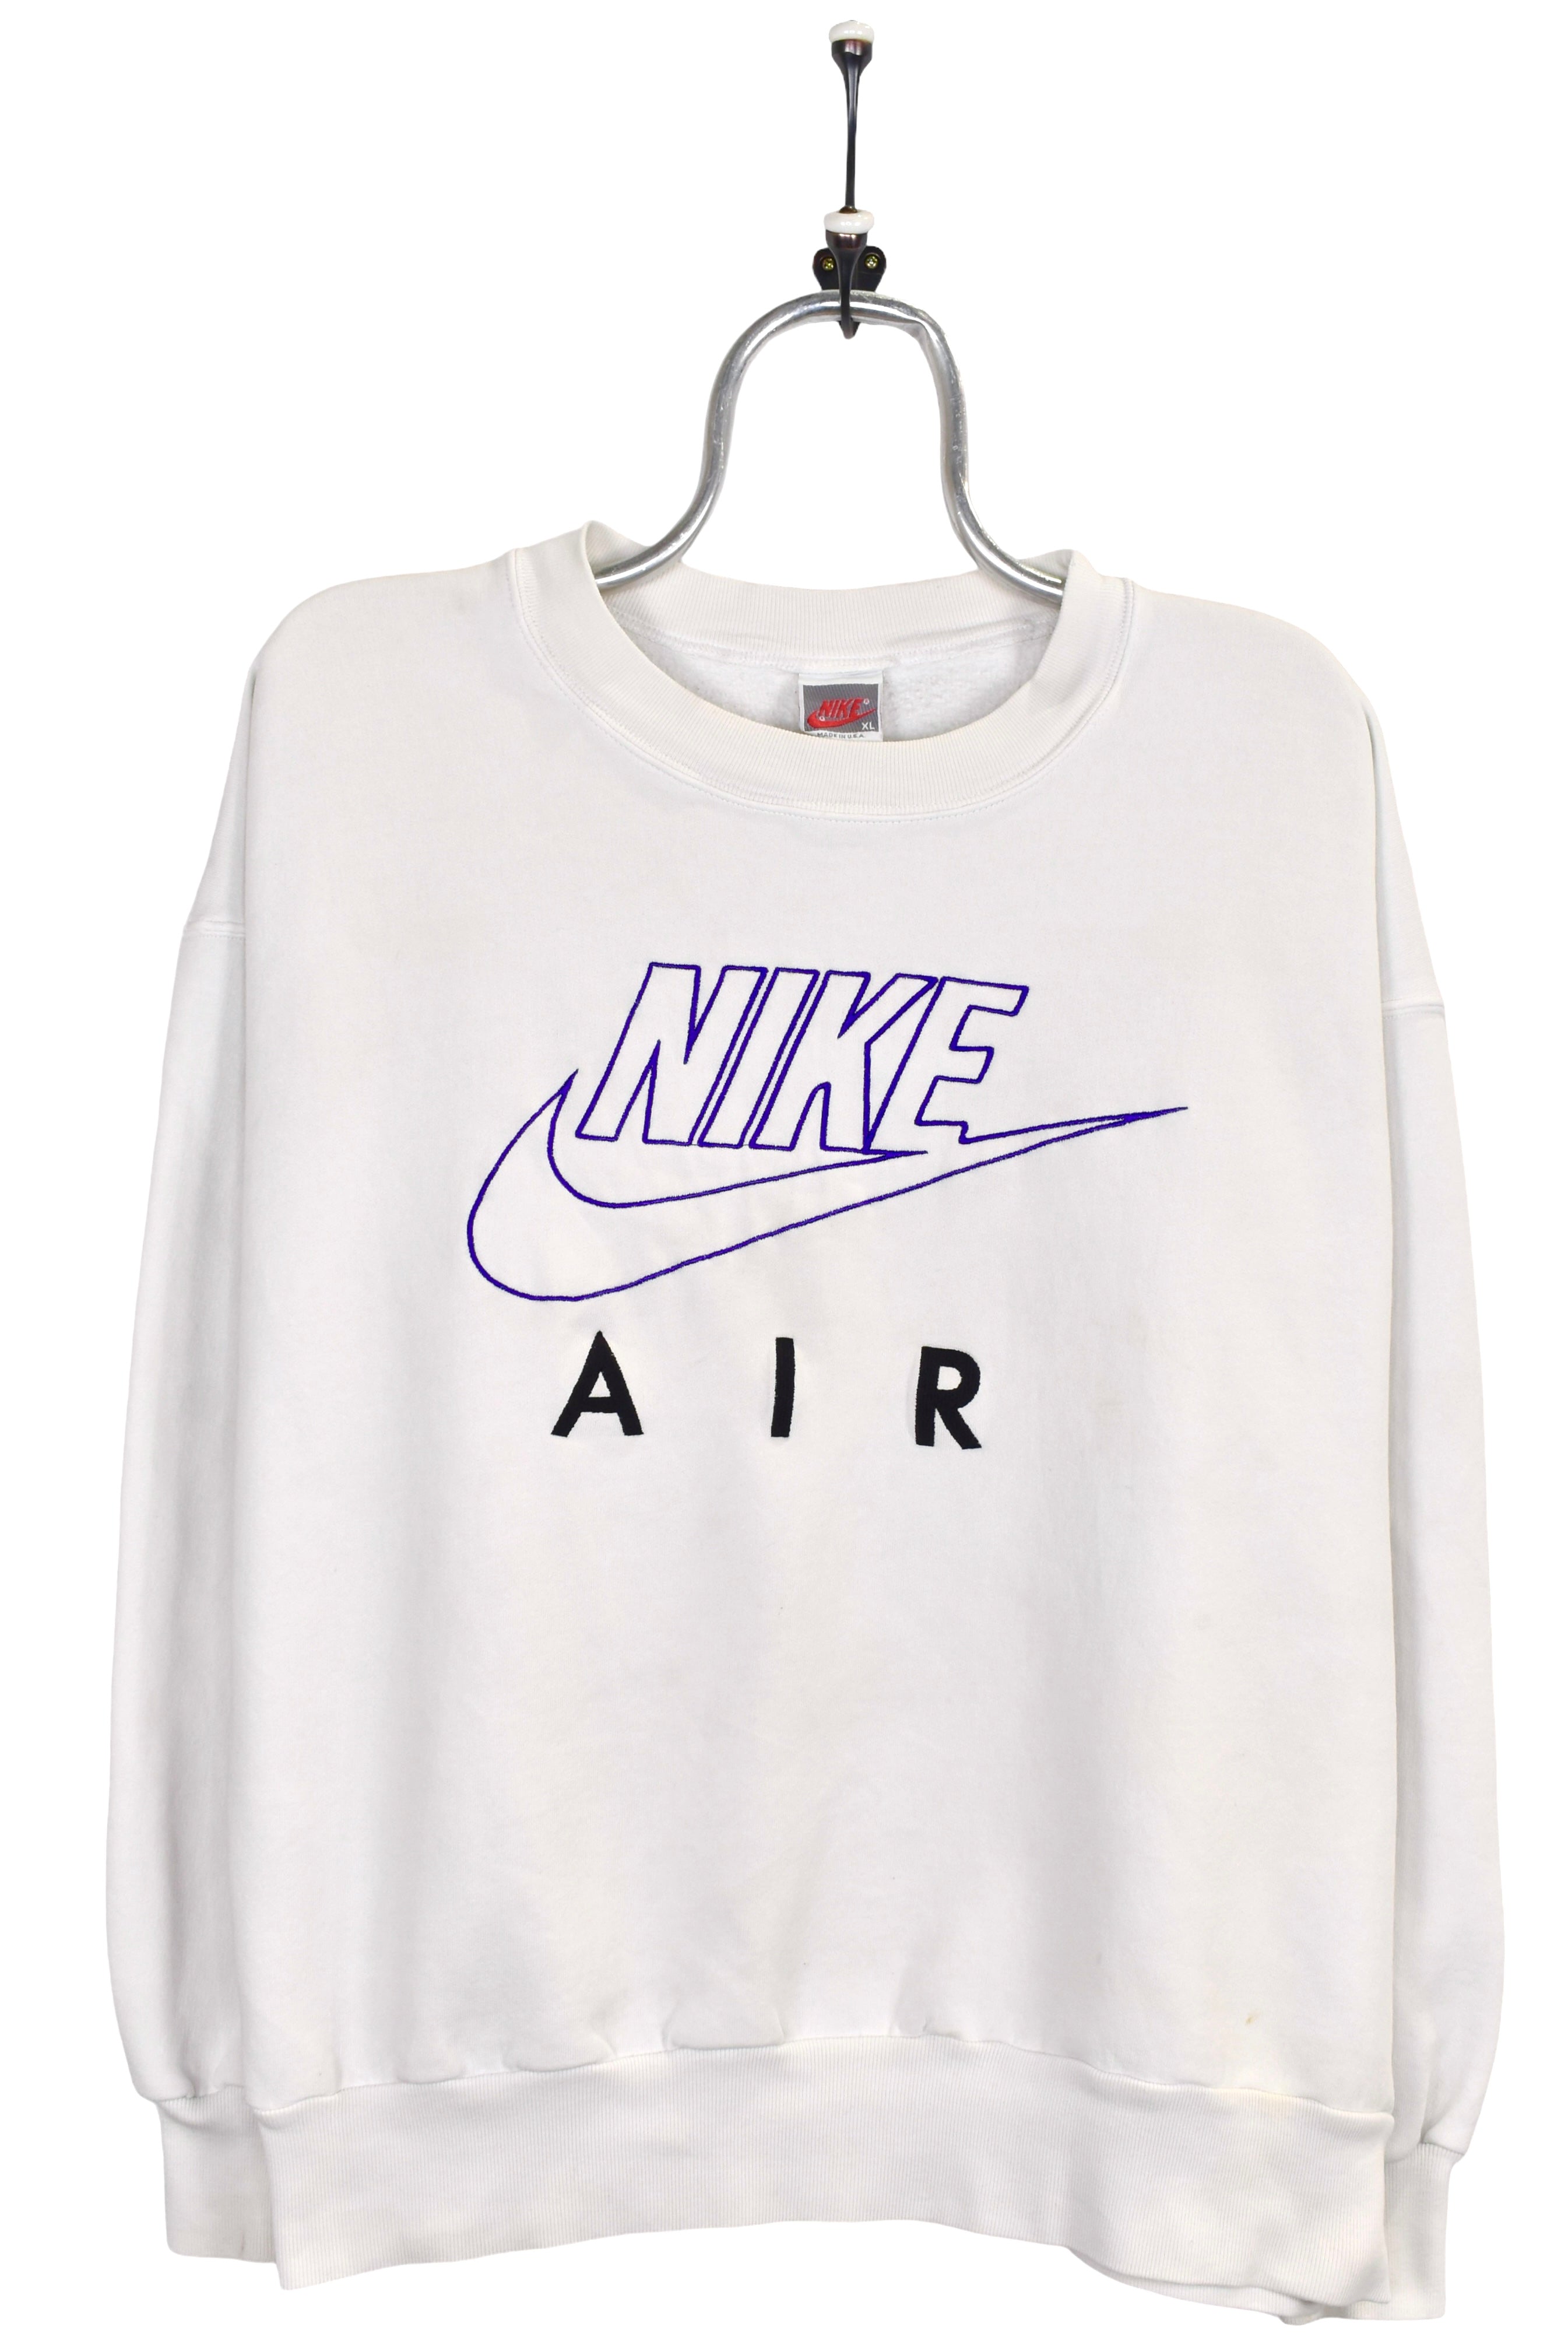 Vintage Nike Air sweatshirt, crewneck -